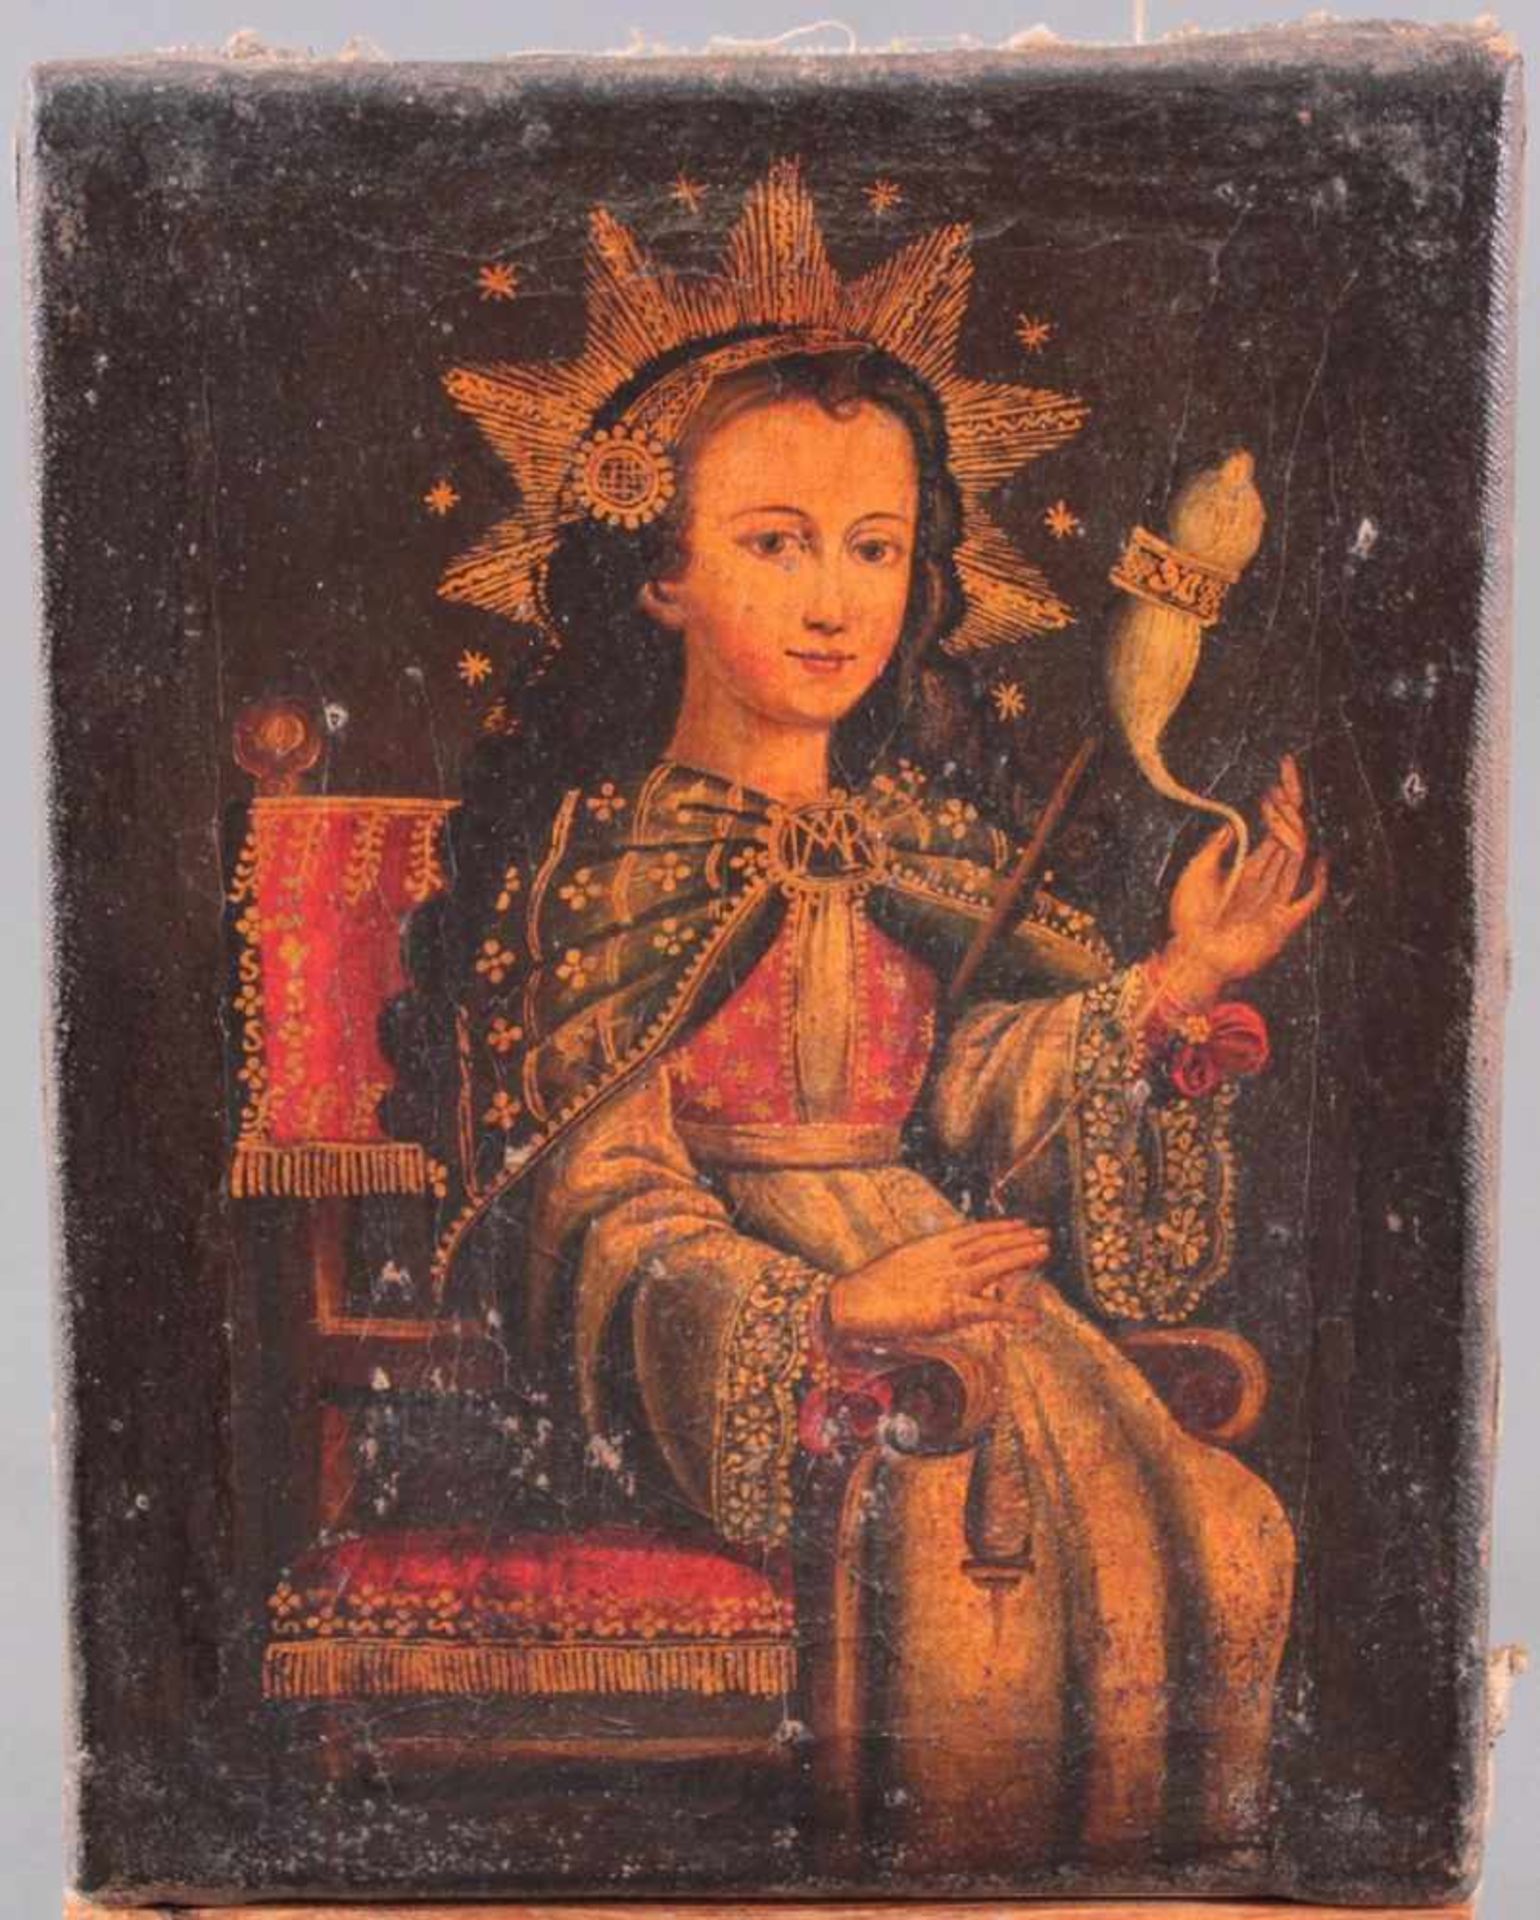 Unbekannter Künstler des 16./17. Jh. Jungfrau Maria mit SpindelÖl auf Leinwand gemalt, sitzende